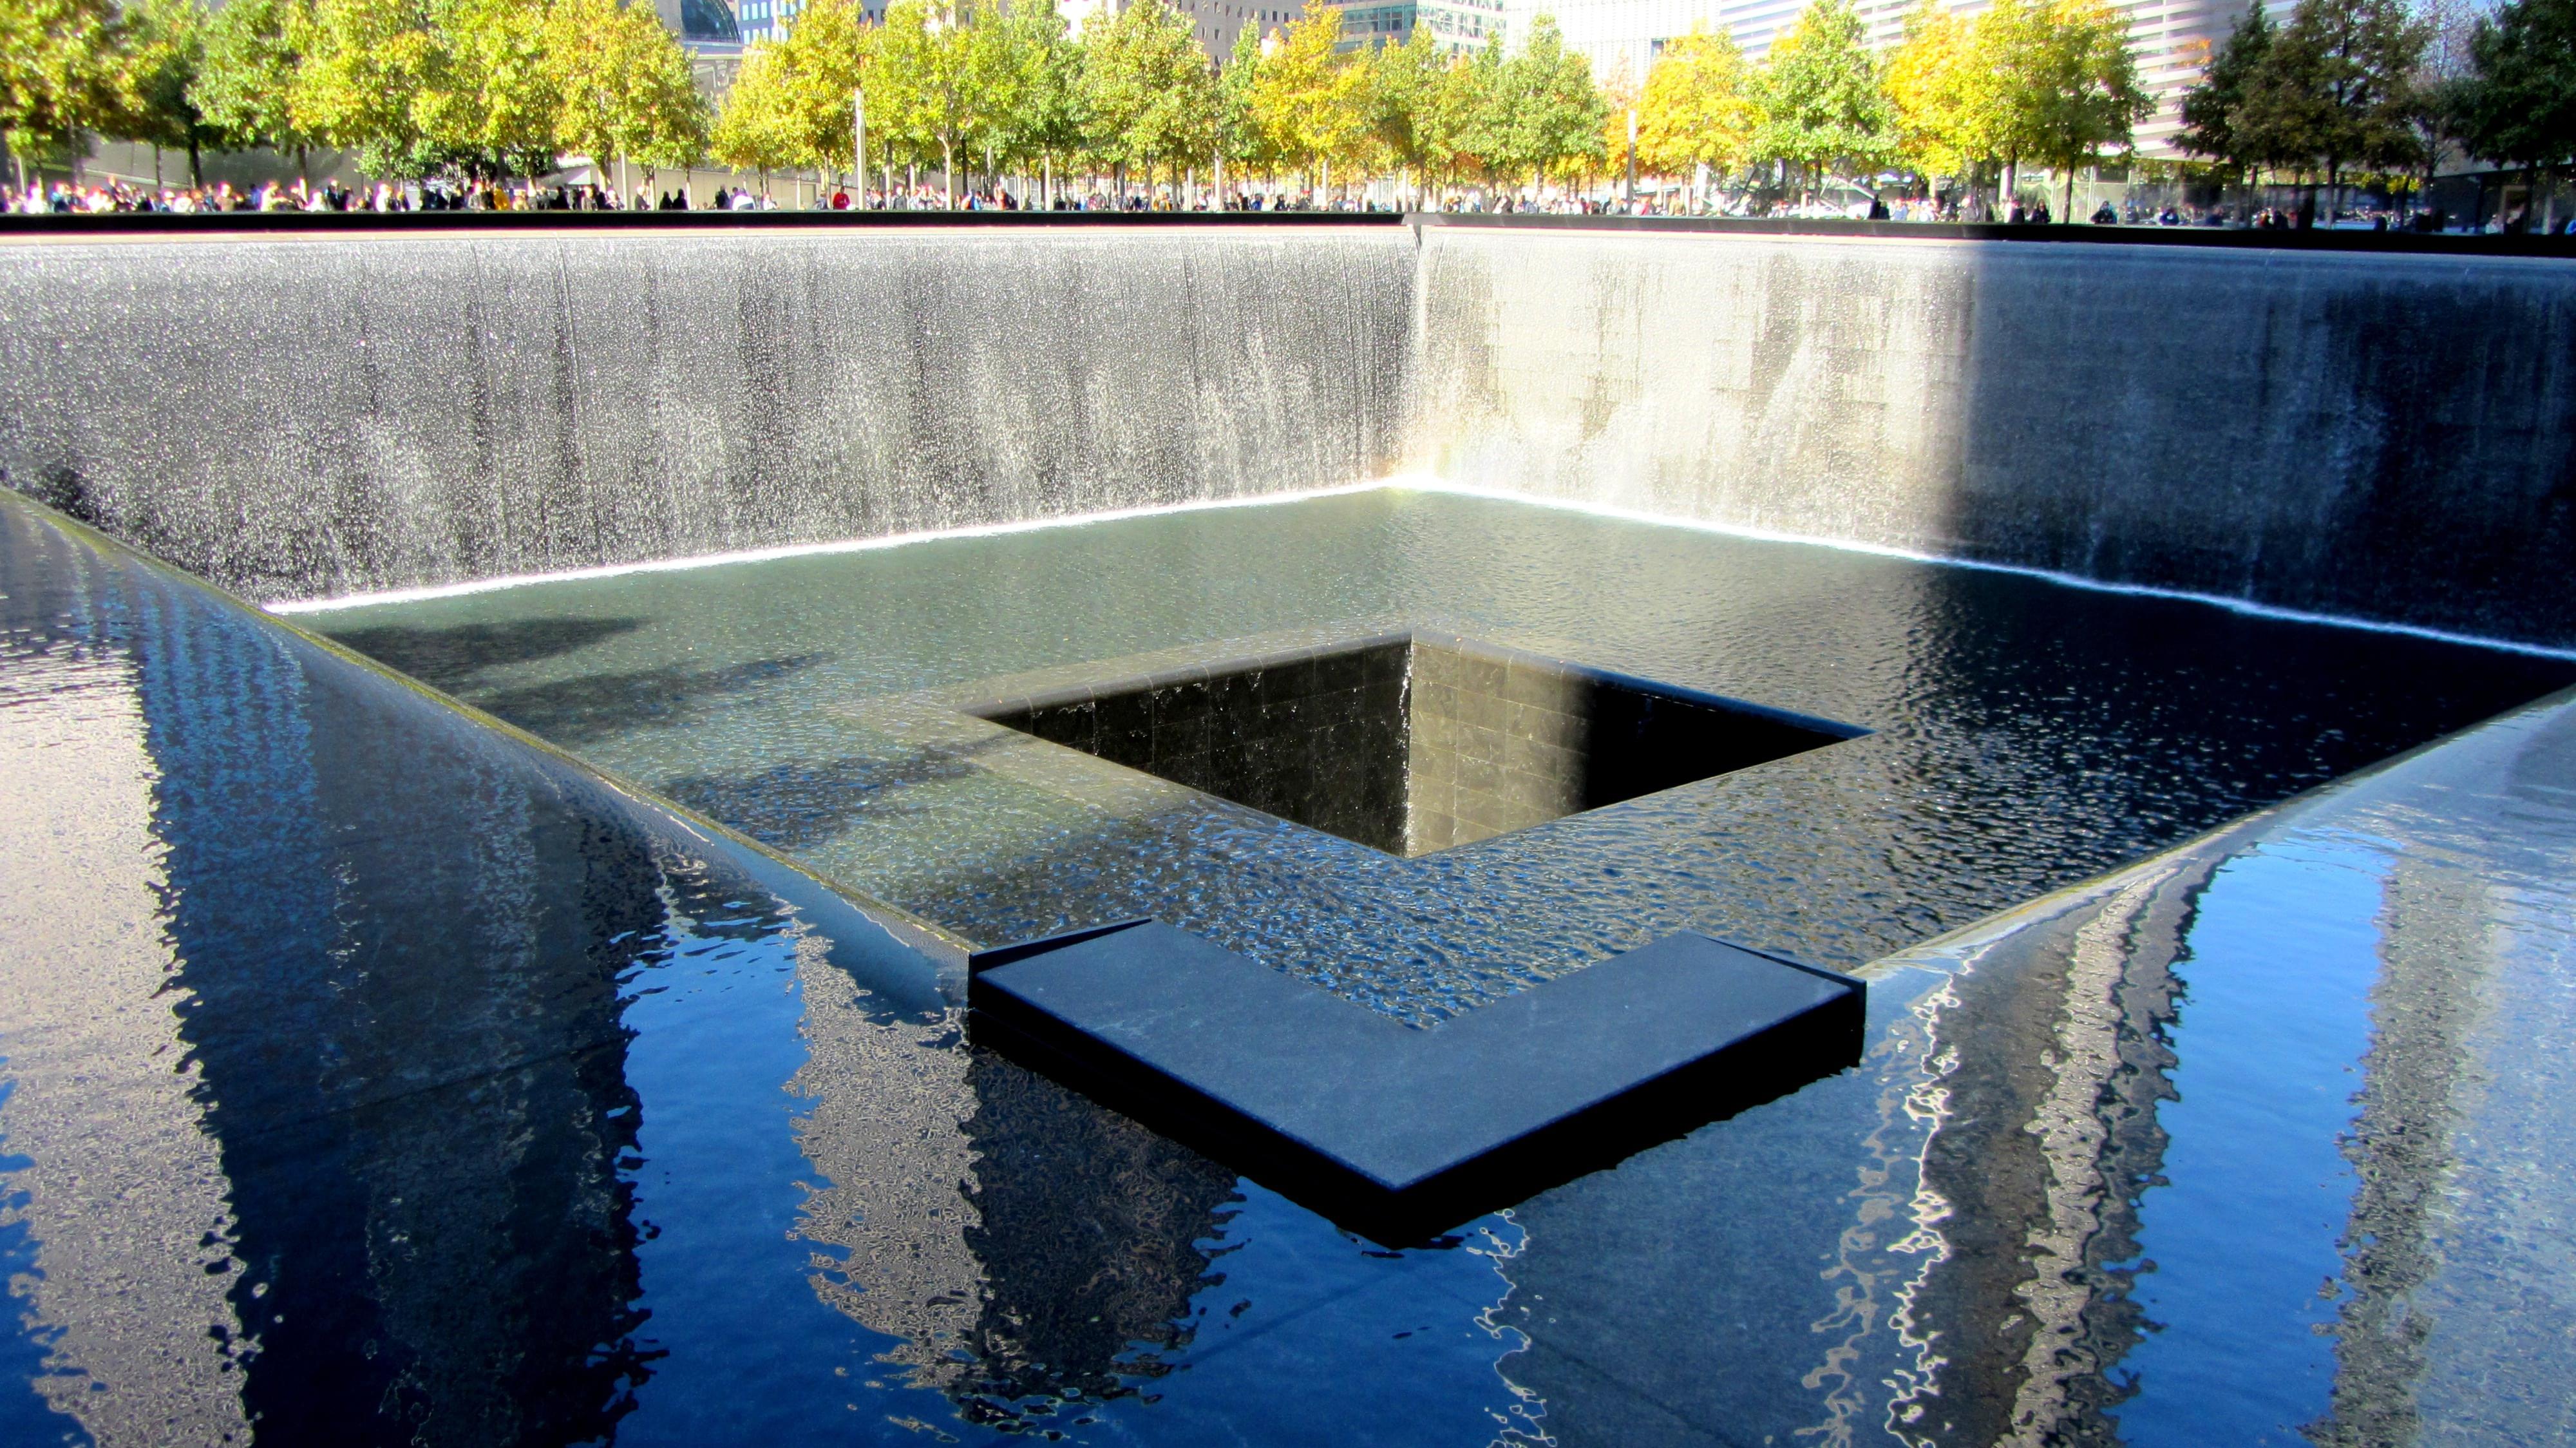 9/11 memorial pools